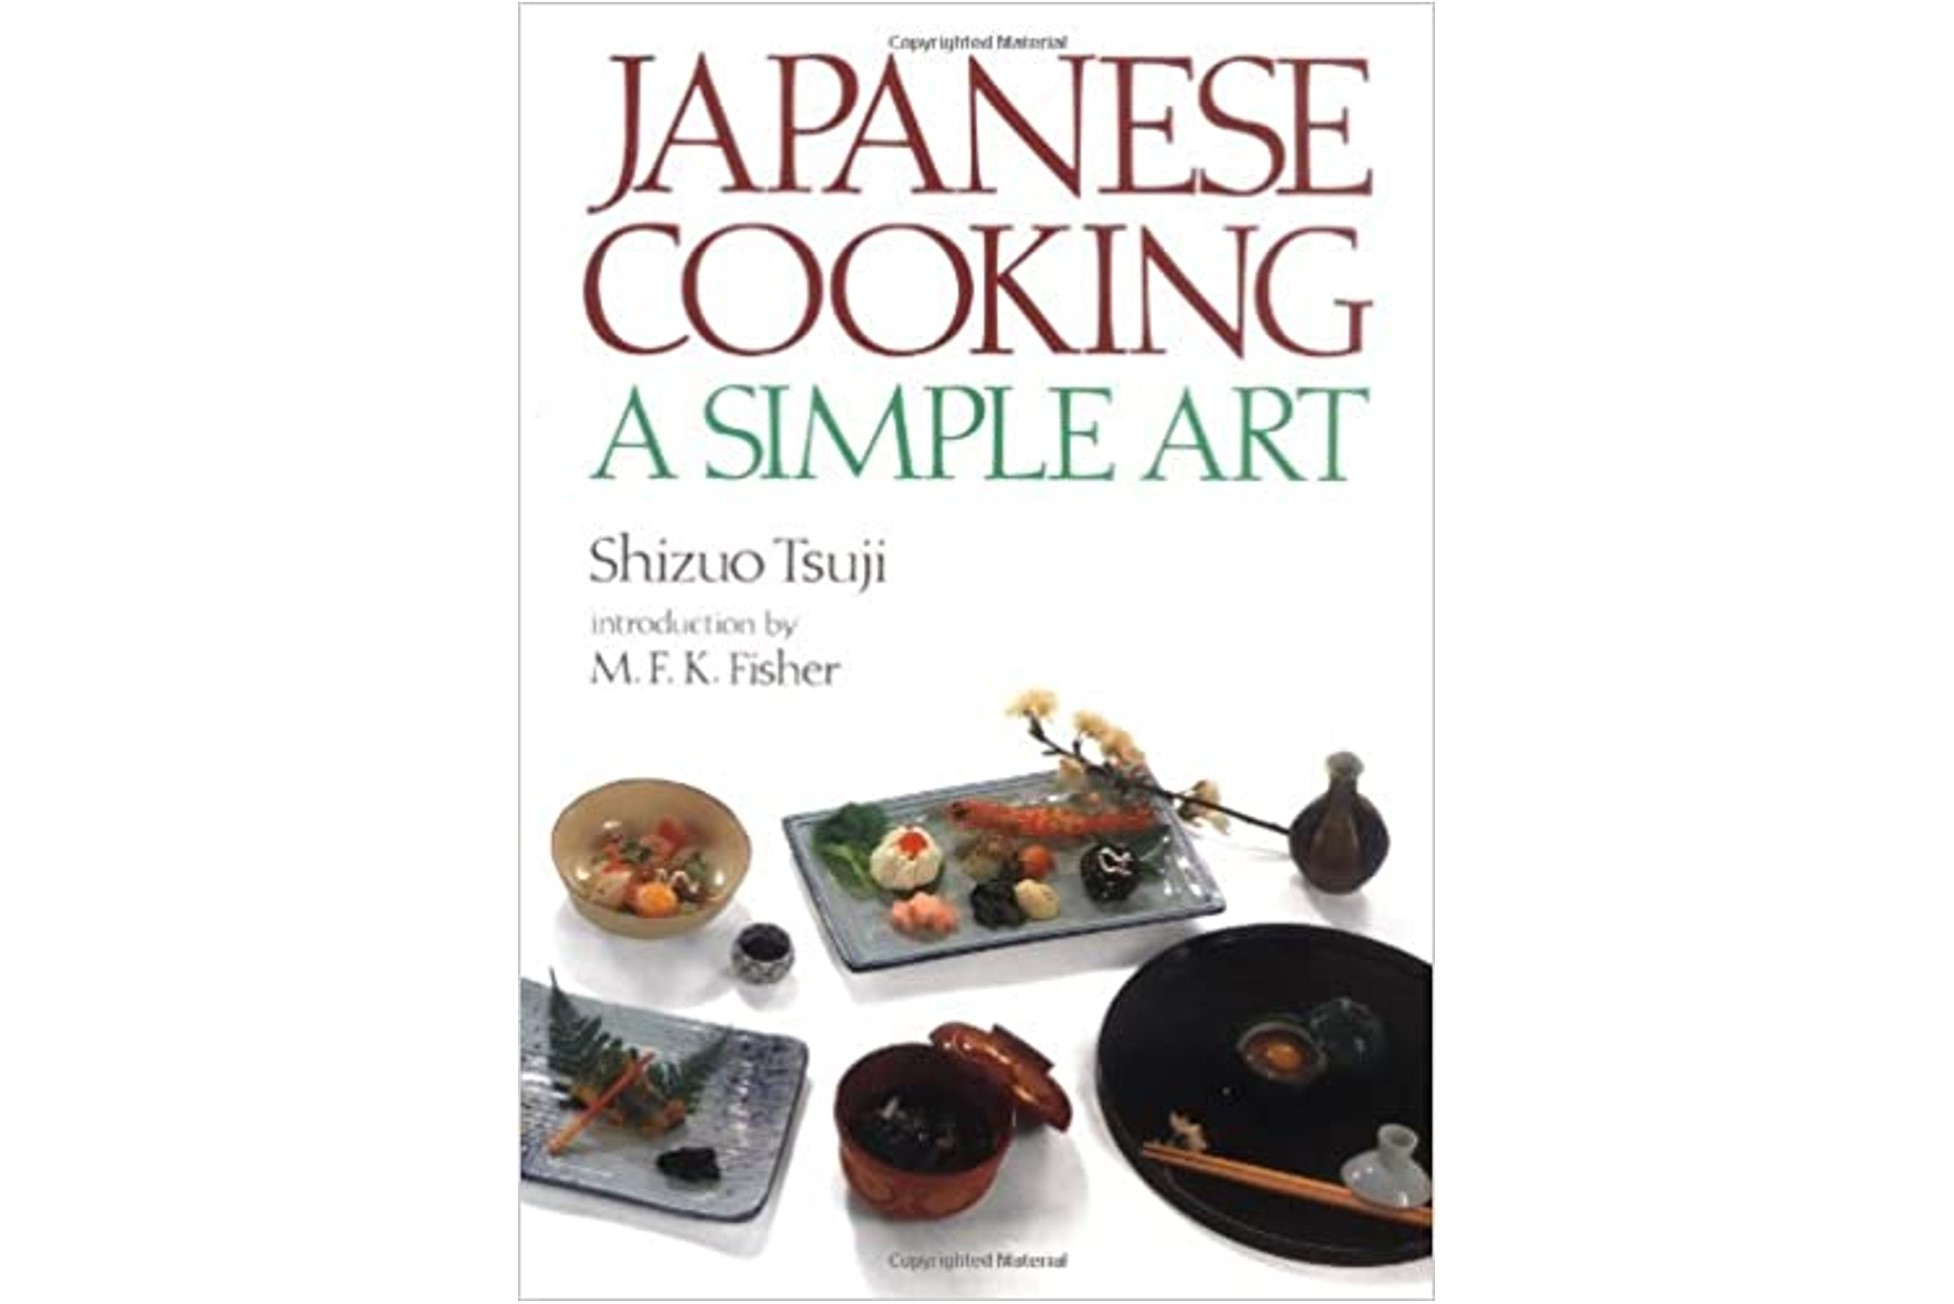 Practical Japanese Cooking: Easy and Elegant　英文版 初めての日本料理